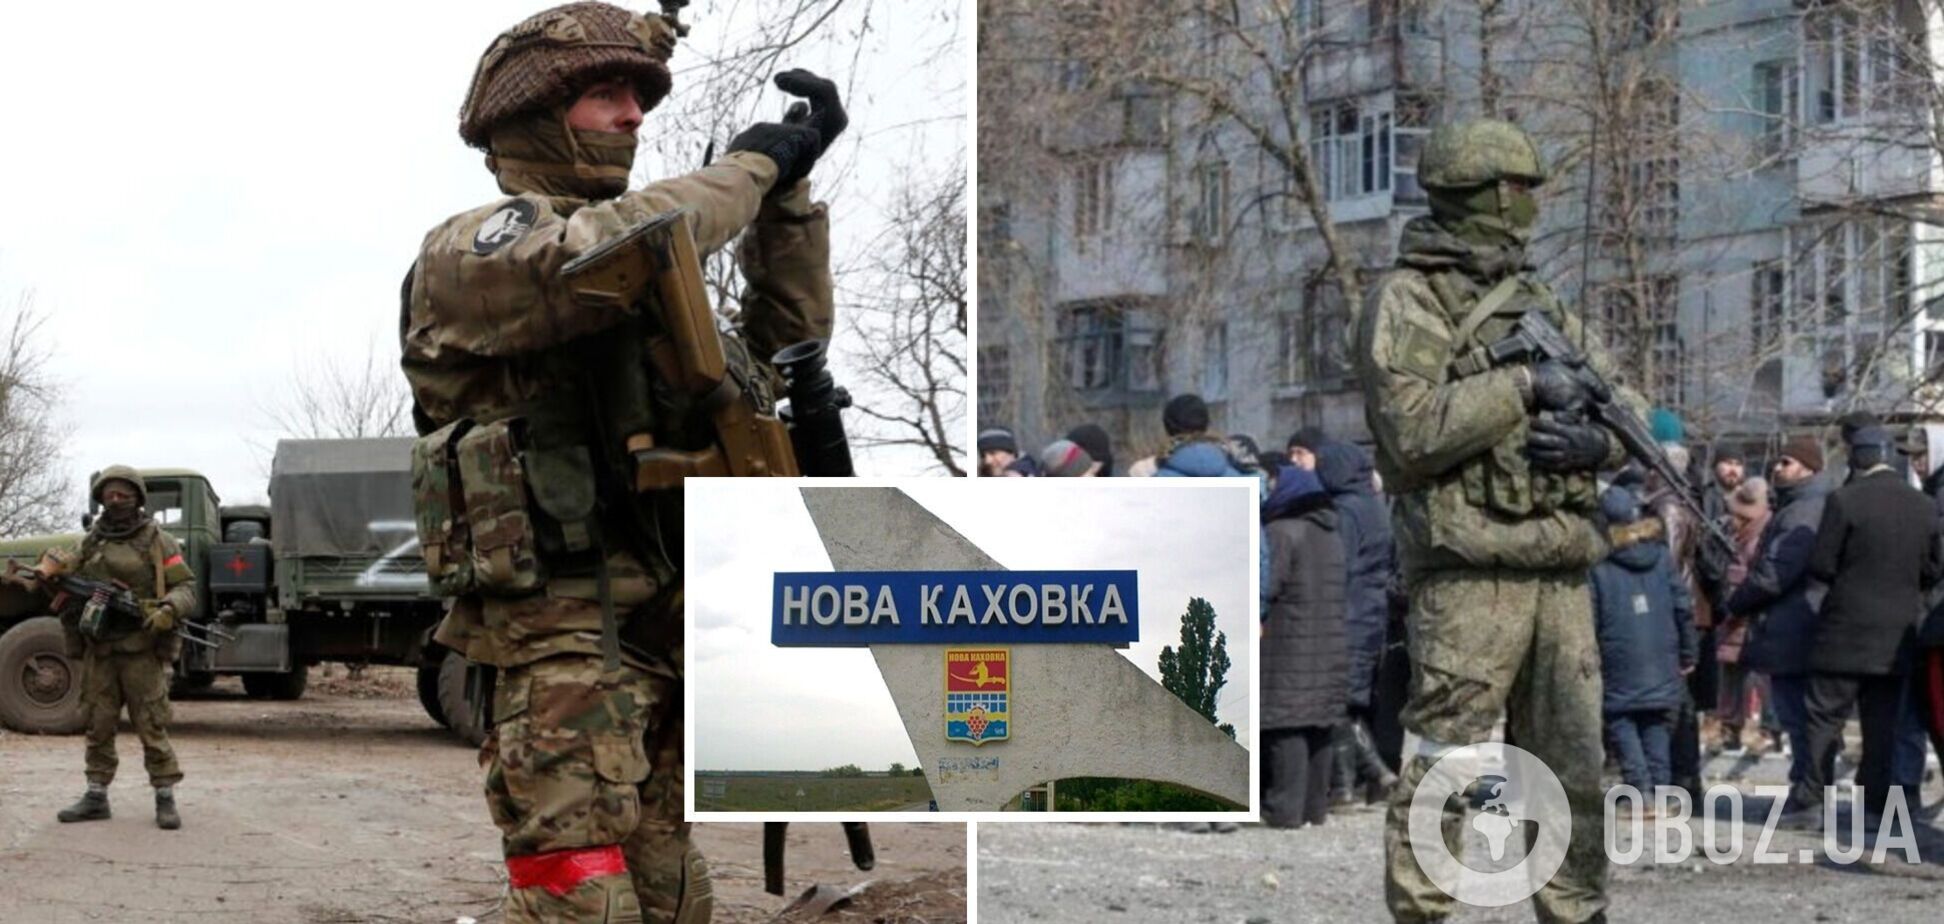 Окупанти проводять примусову 'евакуацію' мешканців Нової Каховки під приводом підготовки до оборони міста